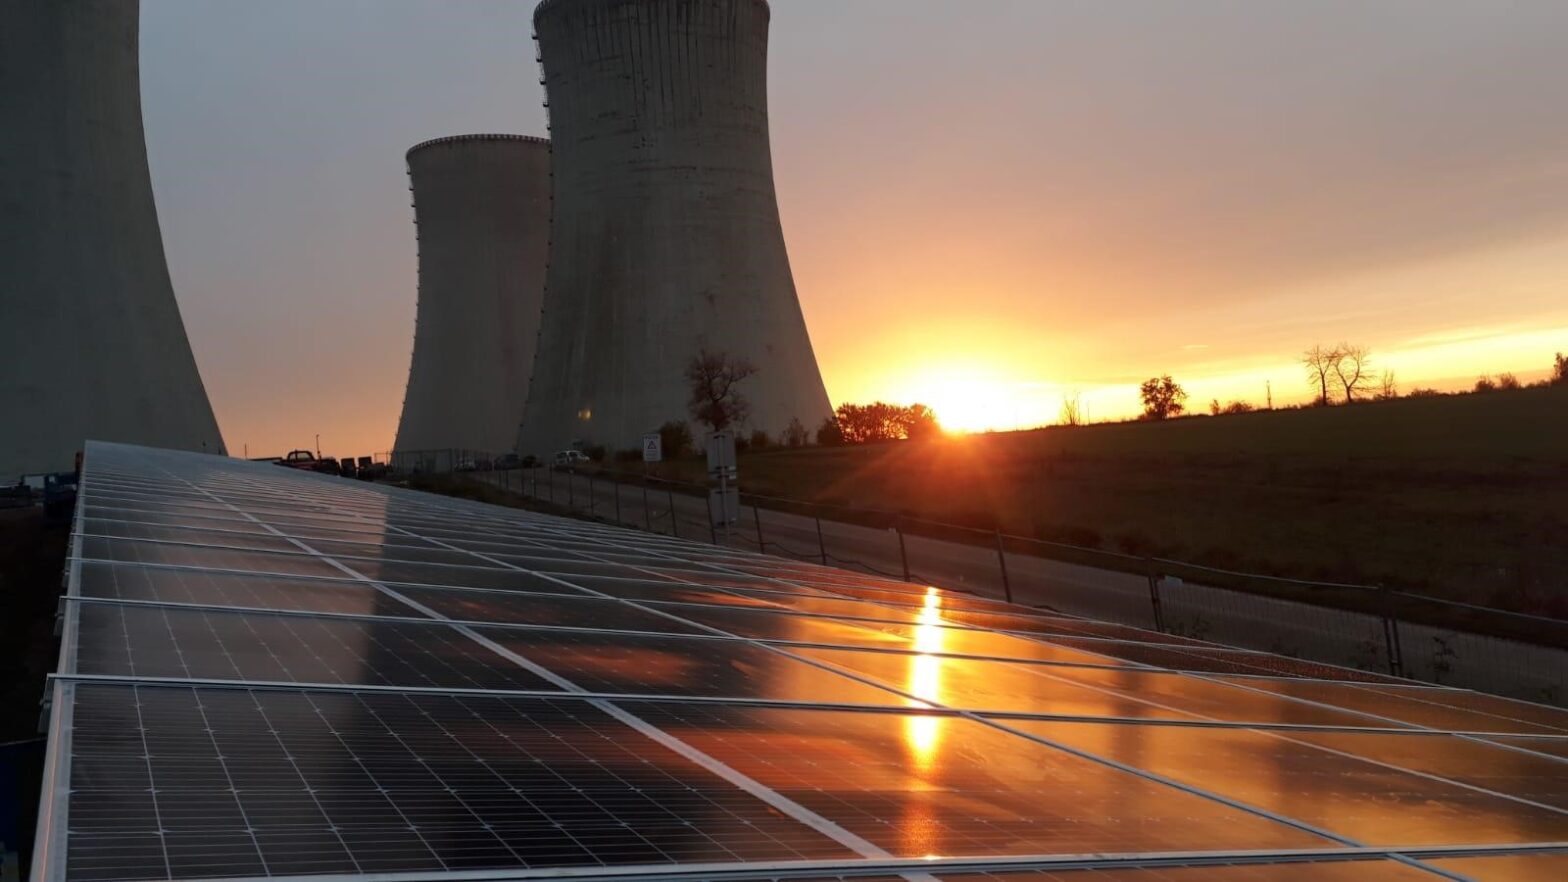 Tschechiens energetische Zukunft soll von der Atomkraft und den Erneuerbaren Energien dominiert werden. Foto: ČEZ